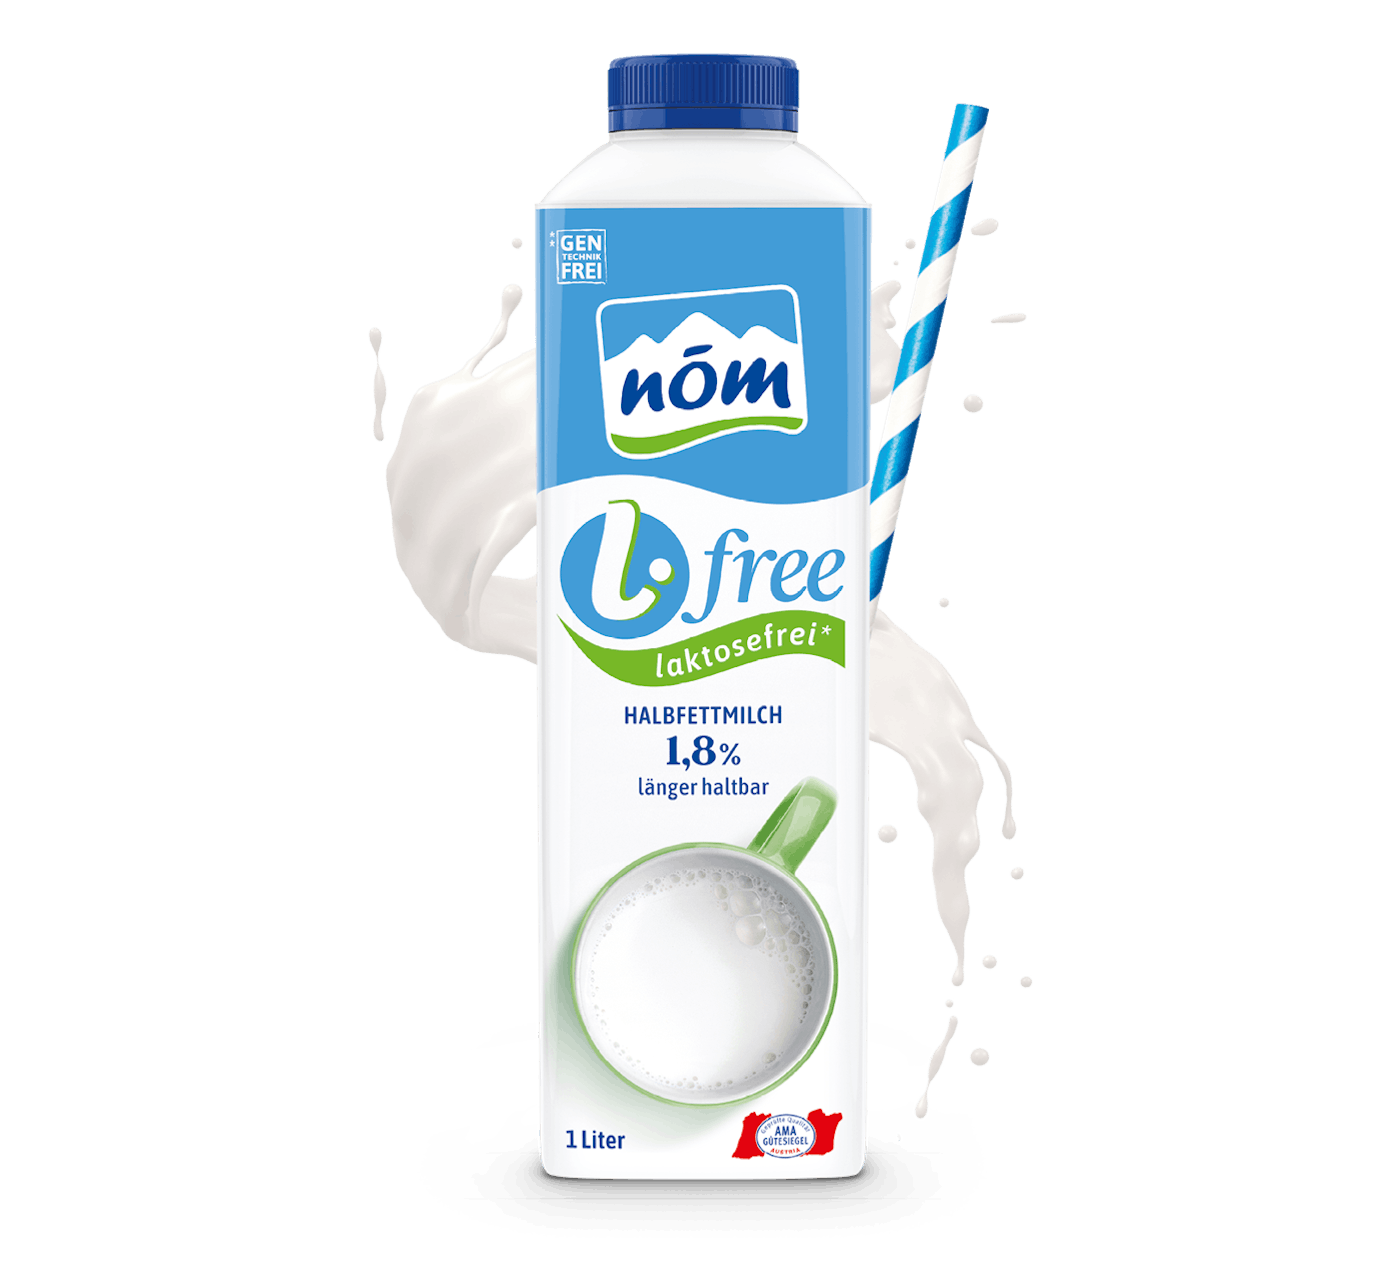 NÖM l.free Halbfettmilch laktosefreie im 1 Liter Tetra Pak mit Milchsplash